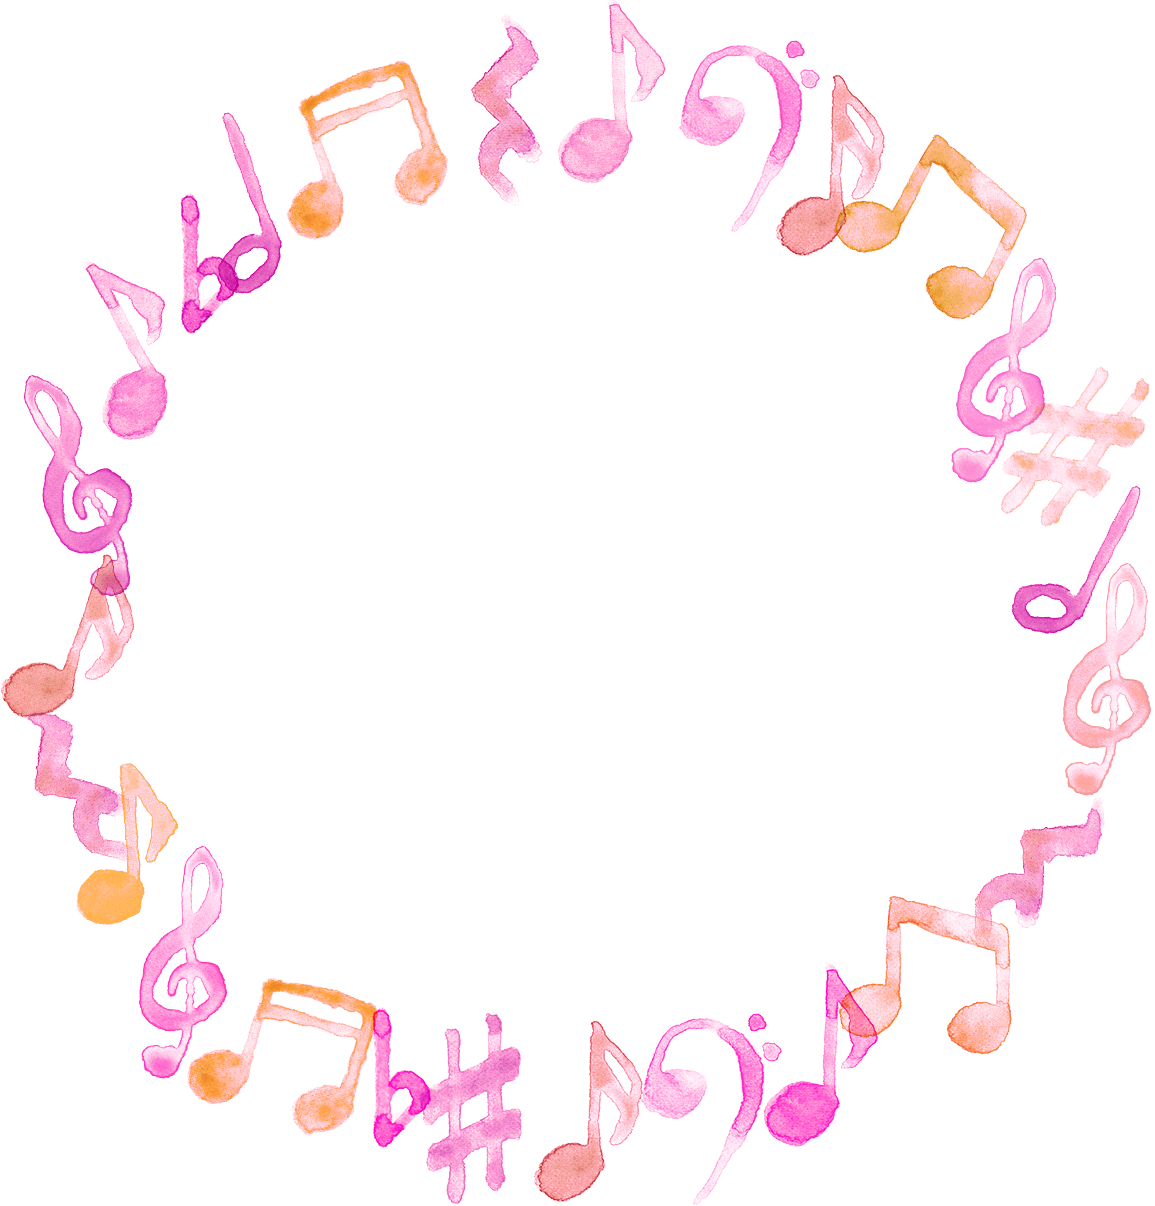 可愛いイラスト無料 音符 音楽 フレーム ピンク色 公式 イラストダウンロード